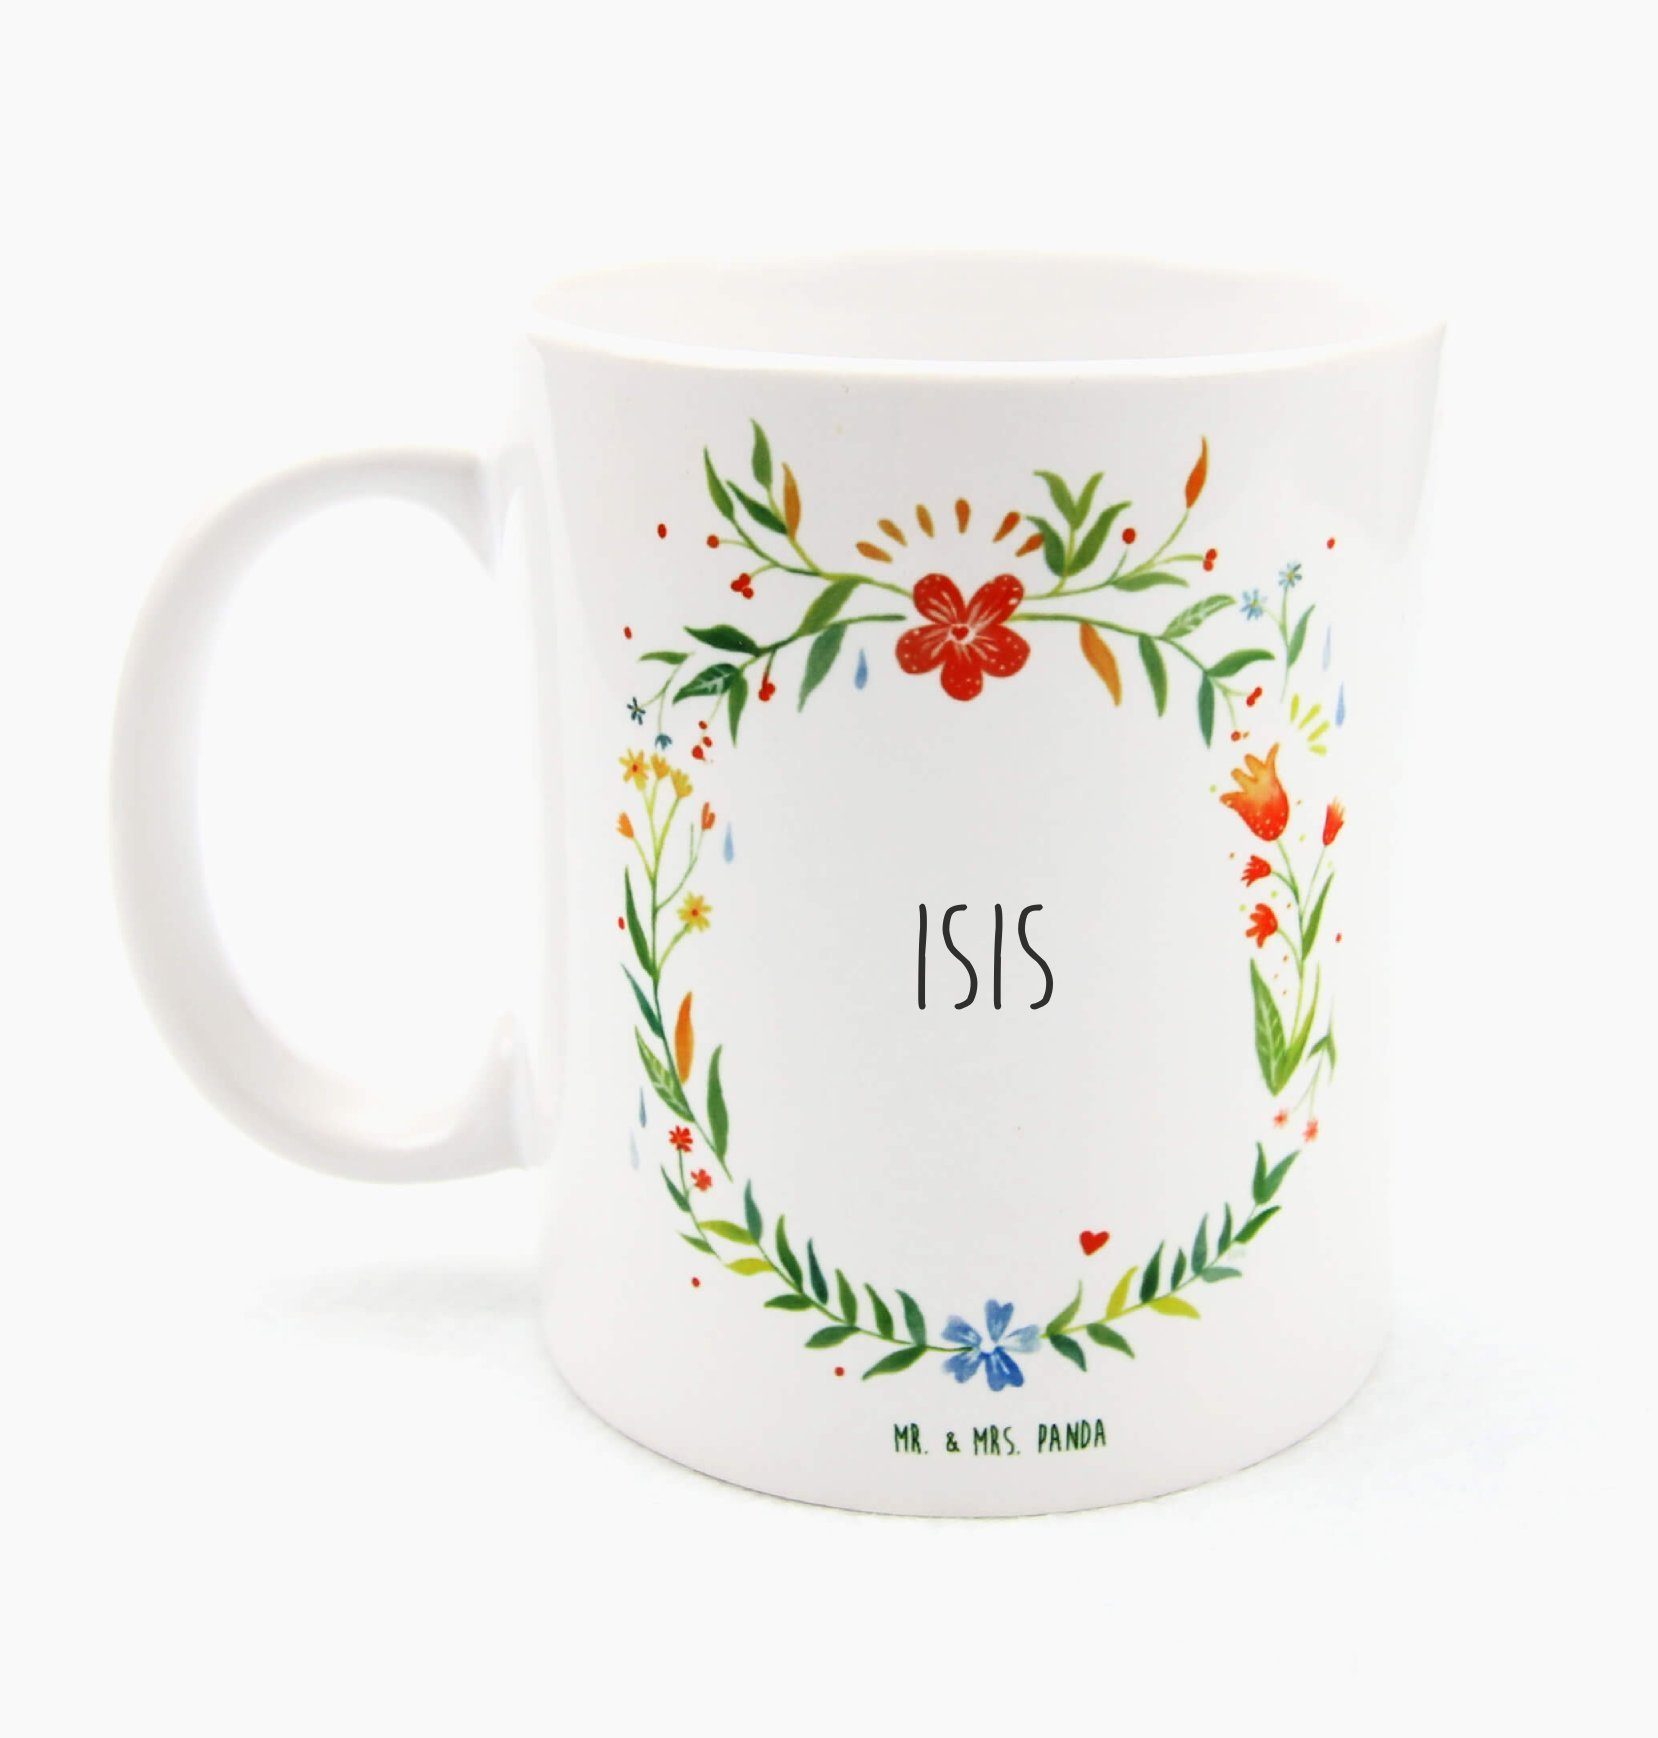 Mr. & Mrs. Panda Tasse Isis - Geschenk, Tasse Motive, Tasse Sprüche, Kaffeebecher, Porzellan, Keramik